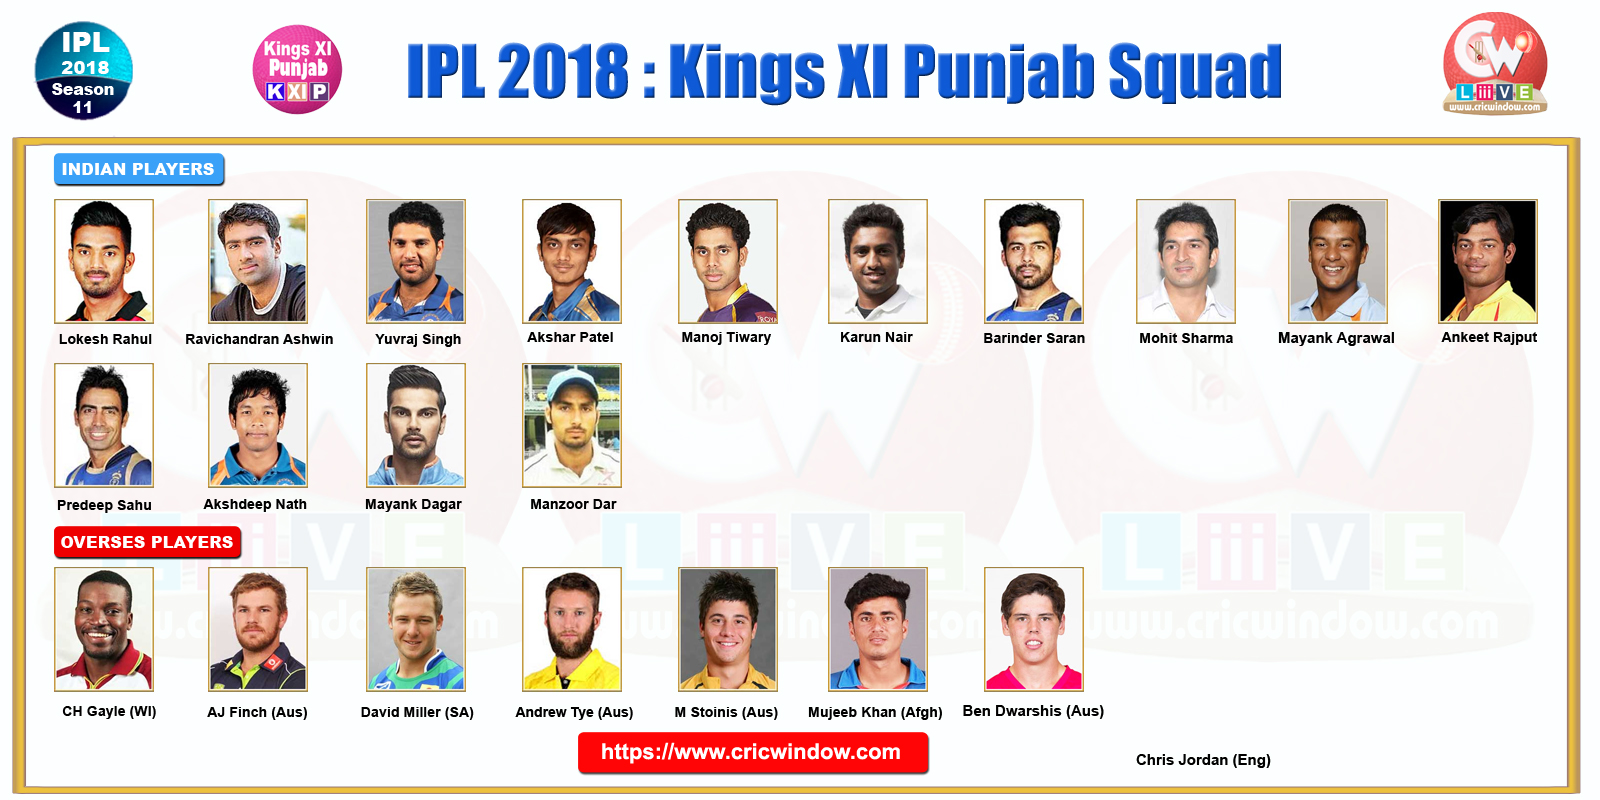 Kings XI Punjab team 2018